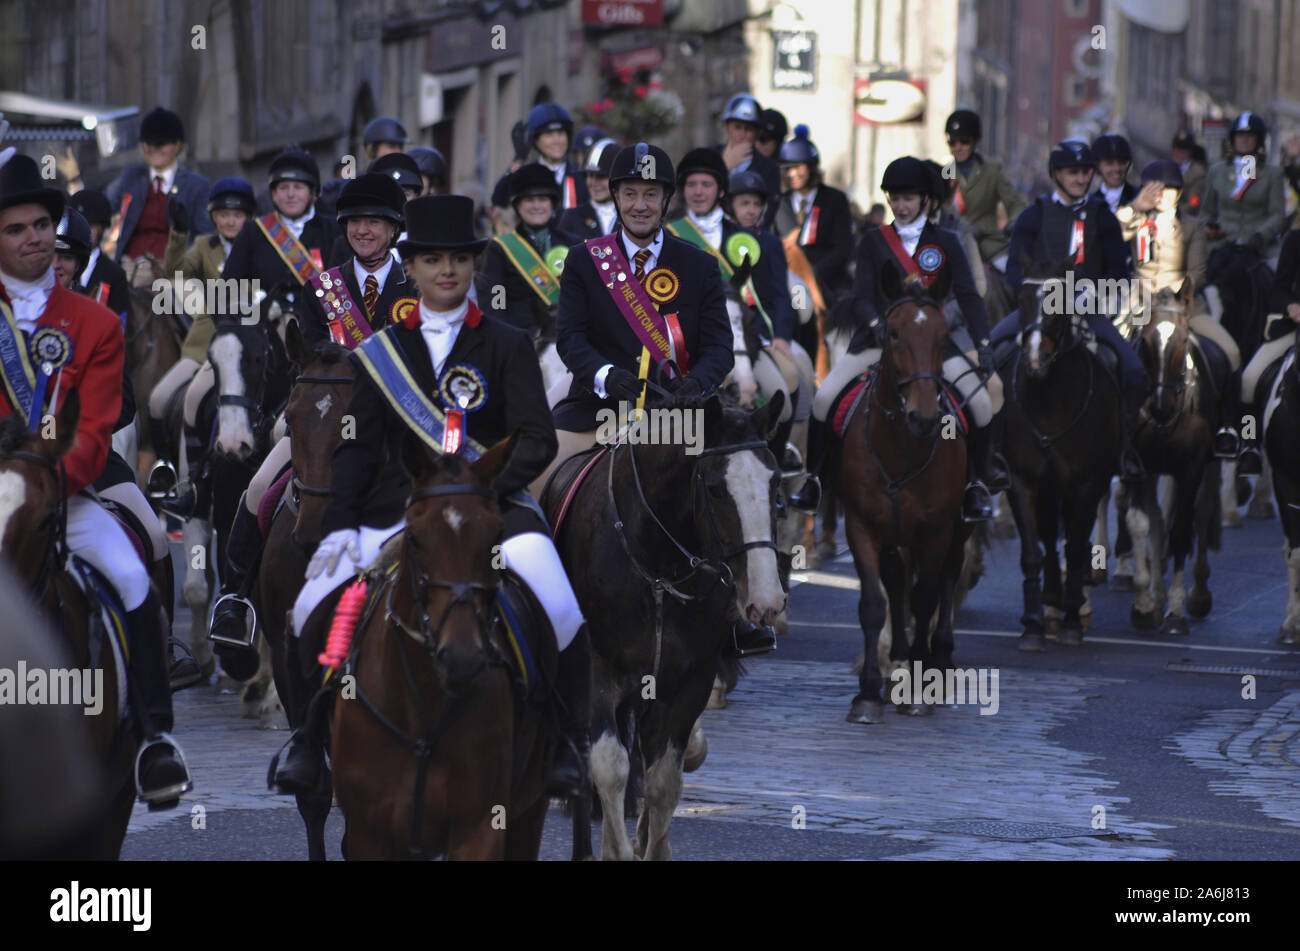 Reiter und civic Zahlen im Jahr 2019, der Märsche in Edinburgh, Schottland, Großbritannien. Über 250 Pferde und Reiter nahmen an der Veranstaltung teil. Stockfoto